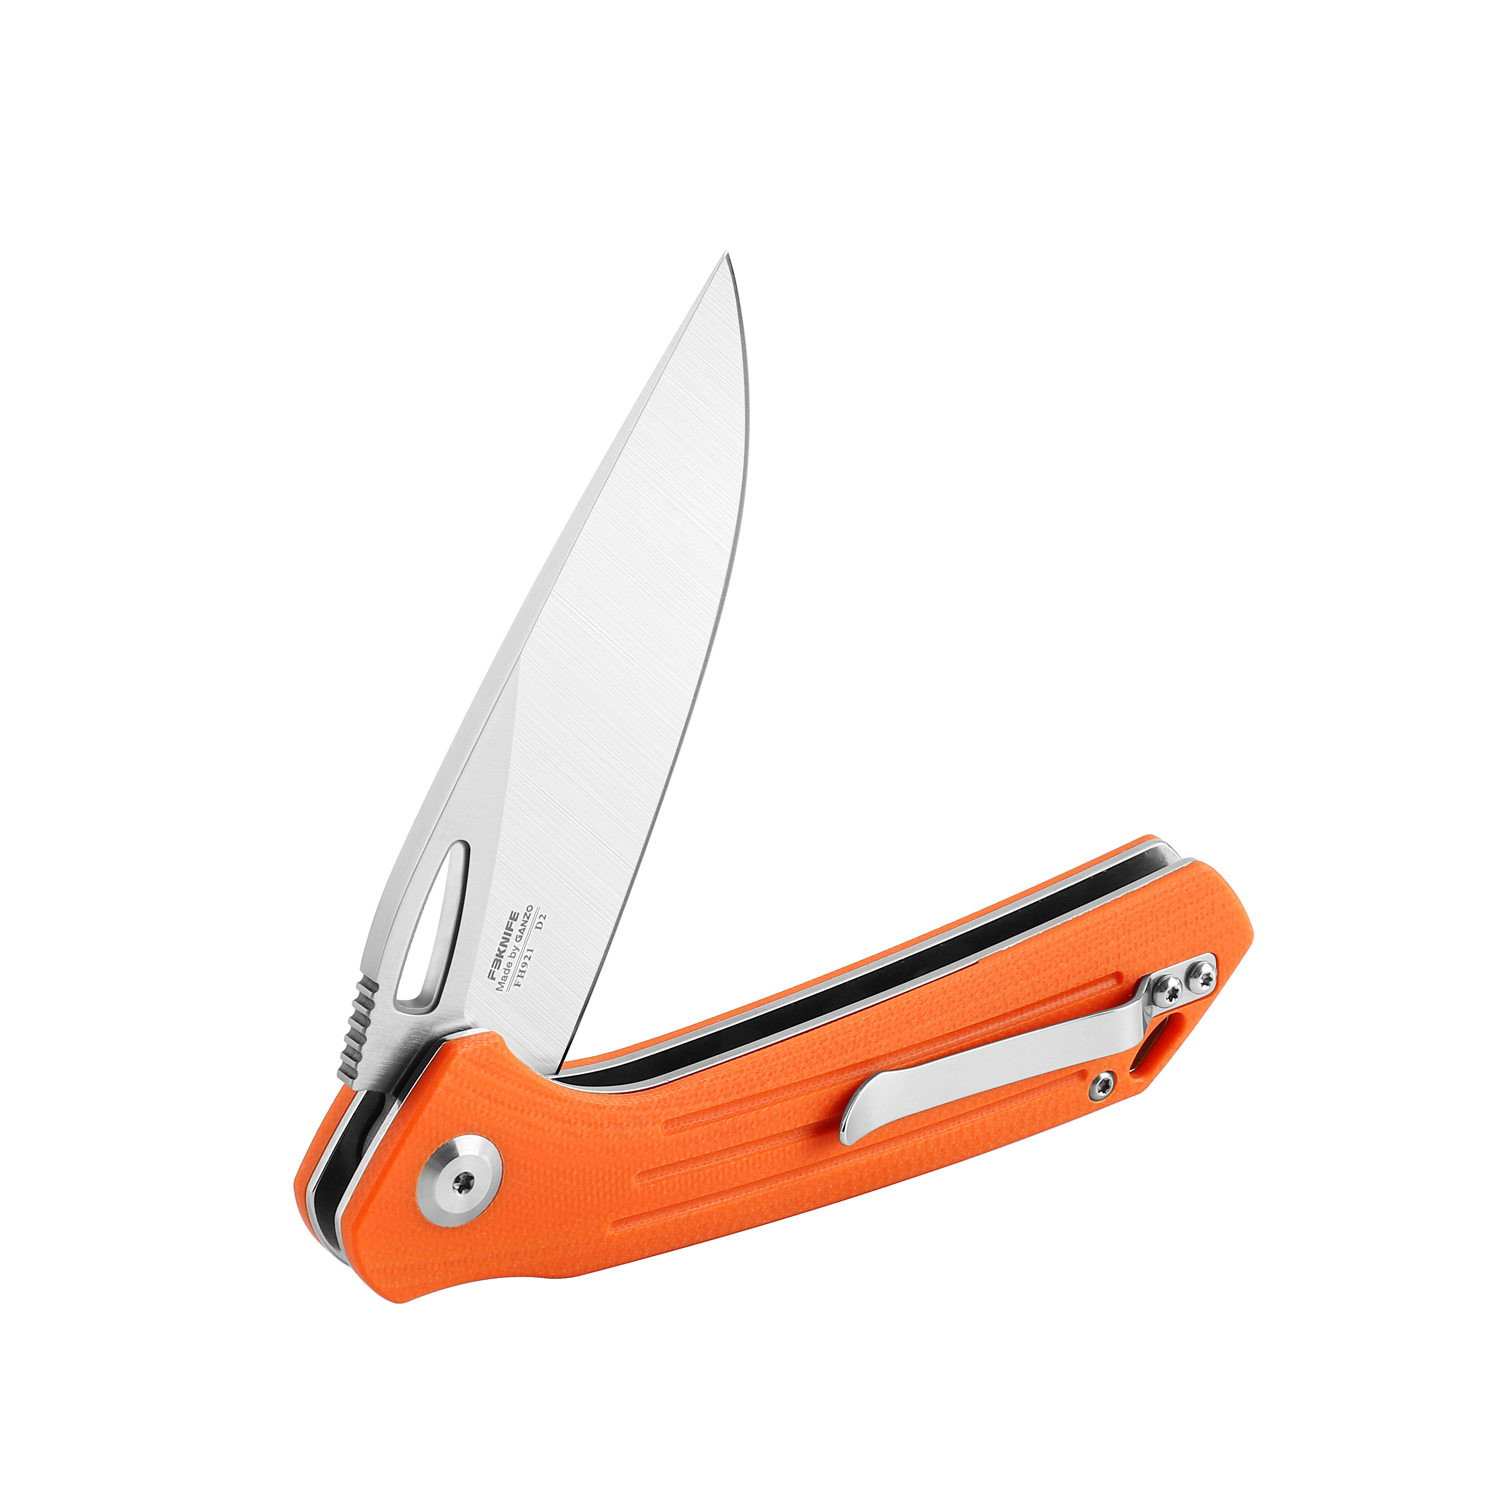 Складной нож Firebird FH921-OR, сталь D2, рукоять G10 оранжевая - фото 2